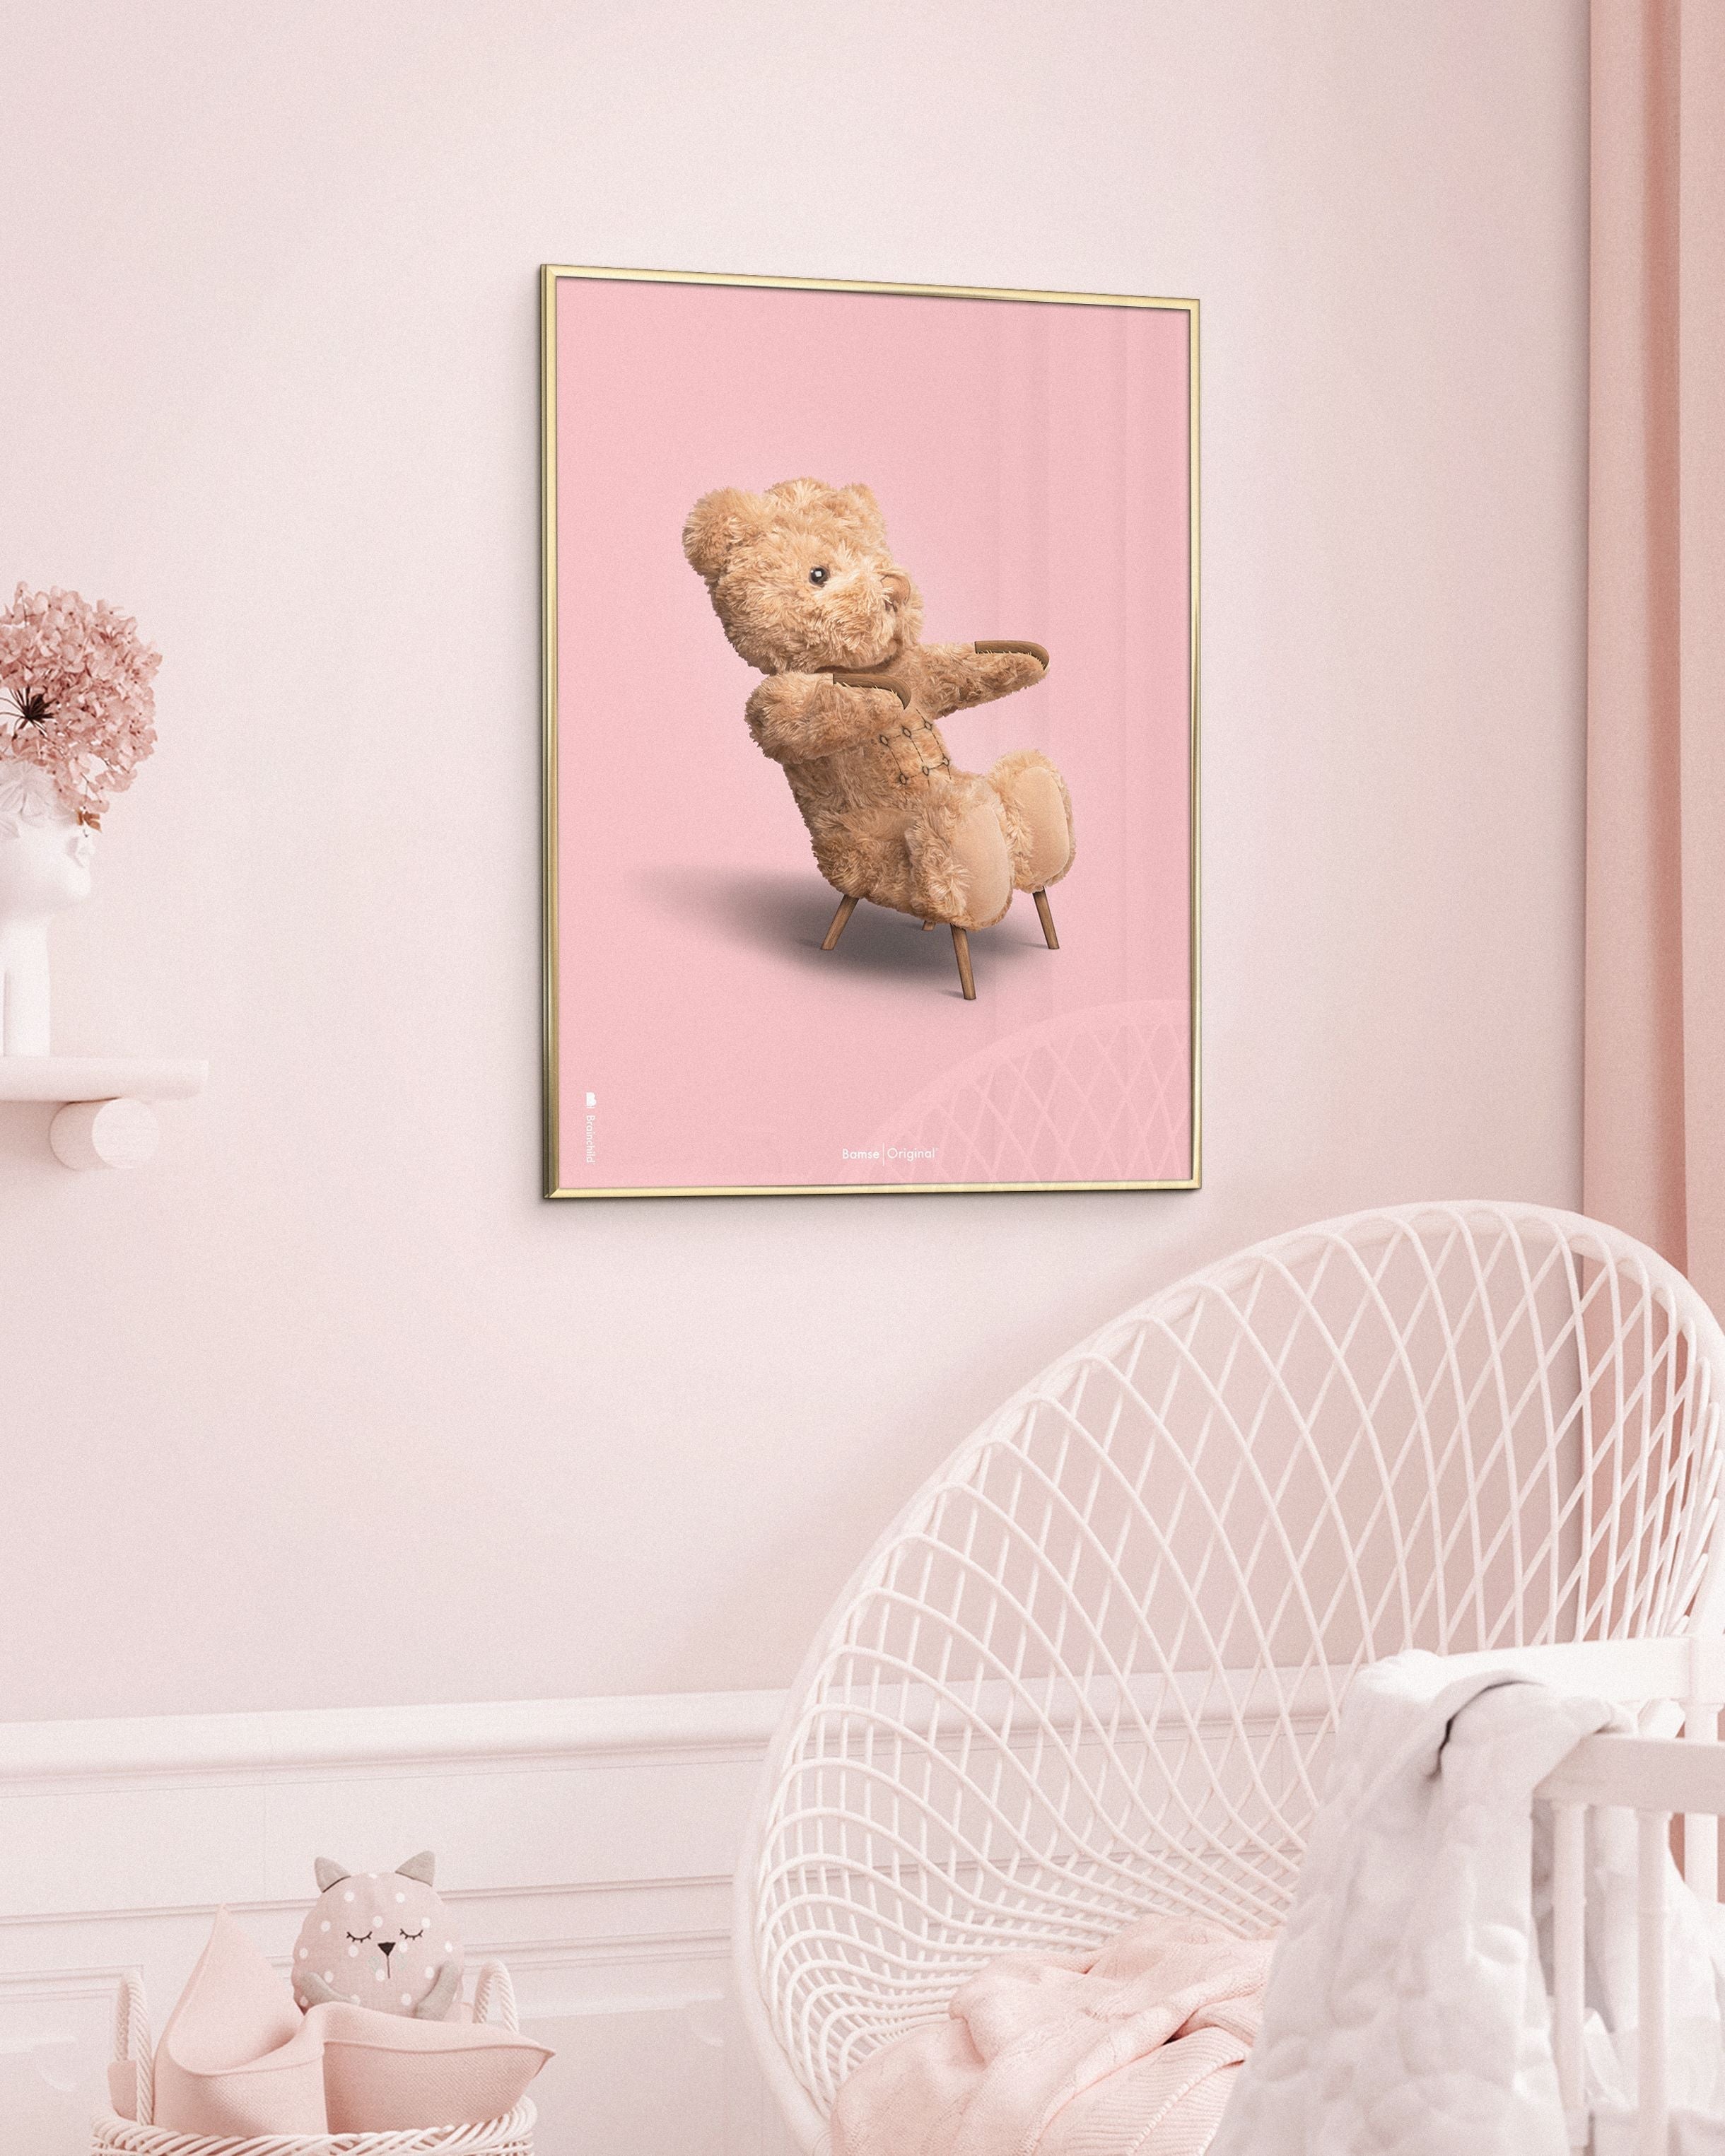 Brainchild Teddy Bear Classic juliste ilman kehystä A5, vaaleanpunainen tausta